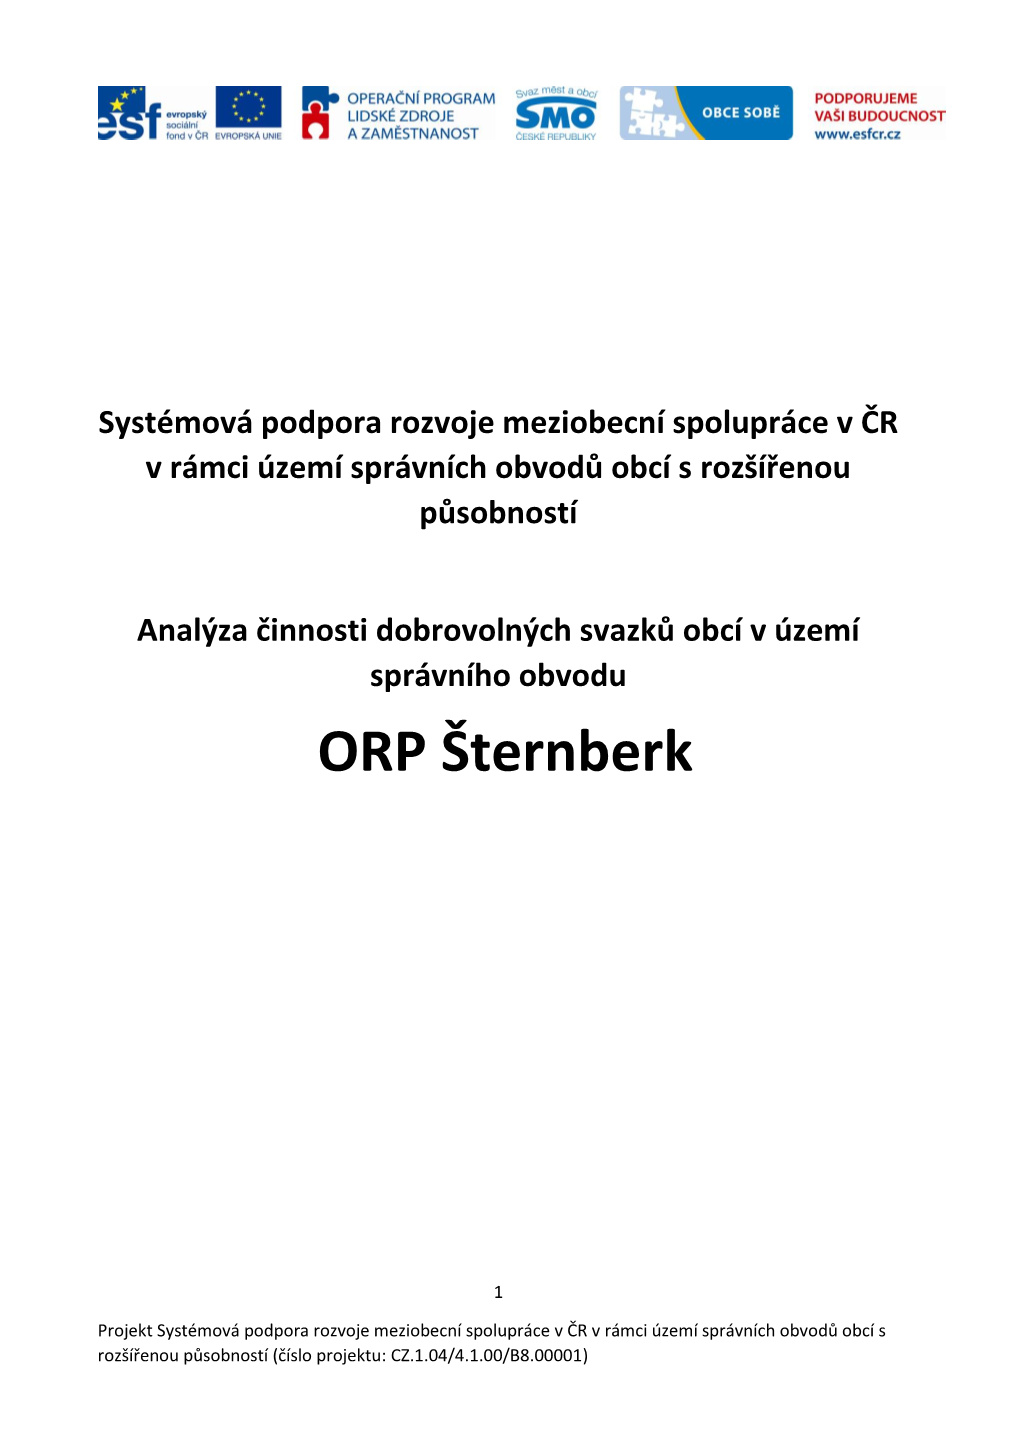 ORP Šternberk